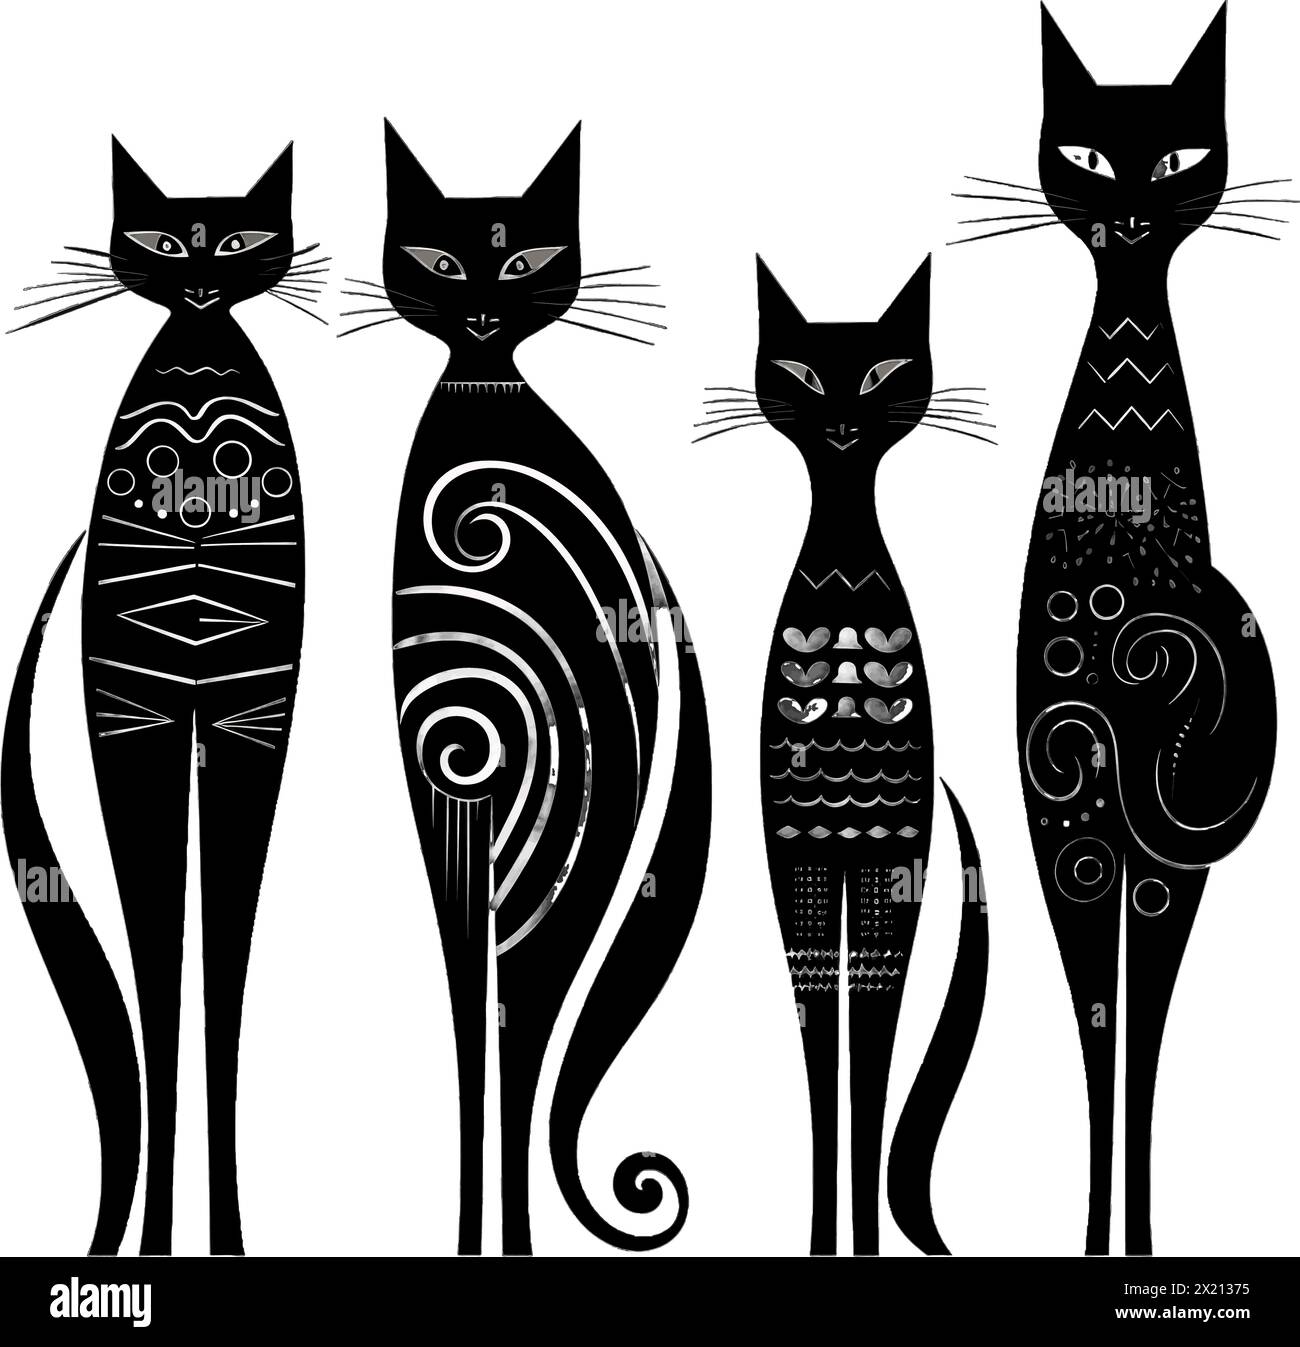 Illustration vectorielle d'un chat abstrait en silhouette noire sur un fond blanc propre, capturant les formes gracieuses de ce vecteur. Illustration de Vecteur